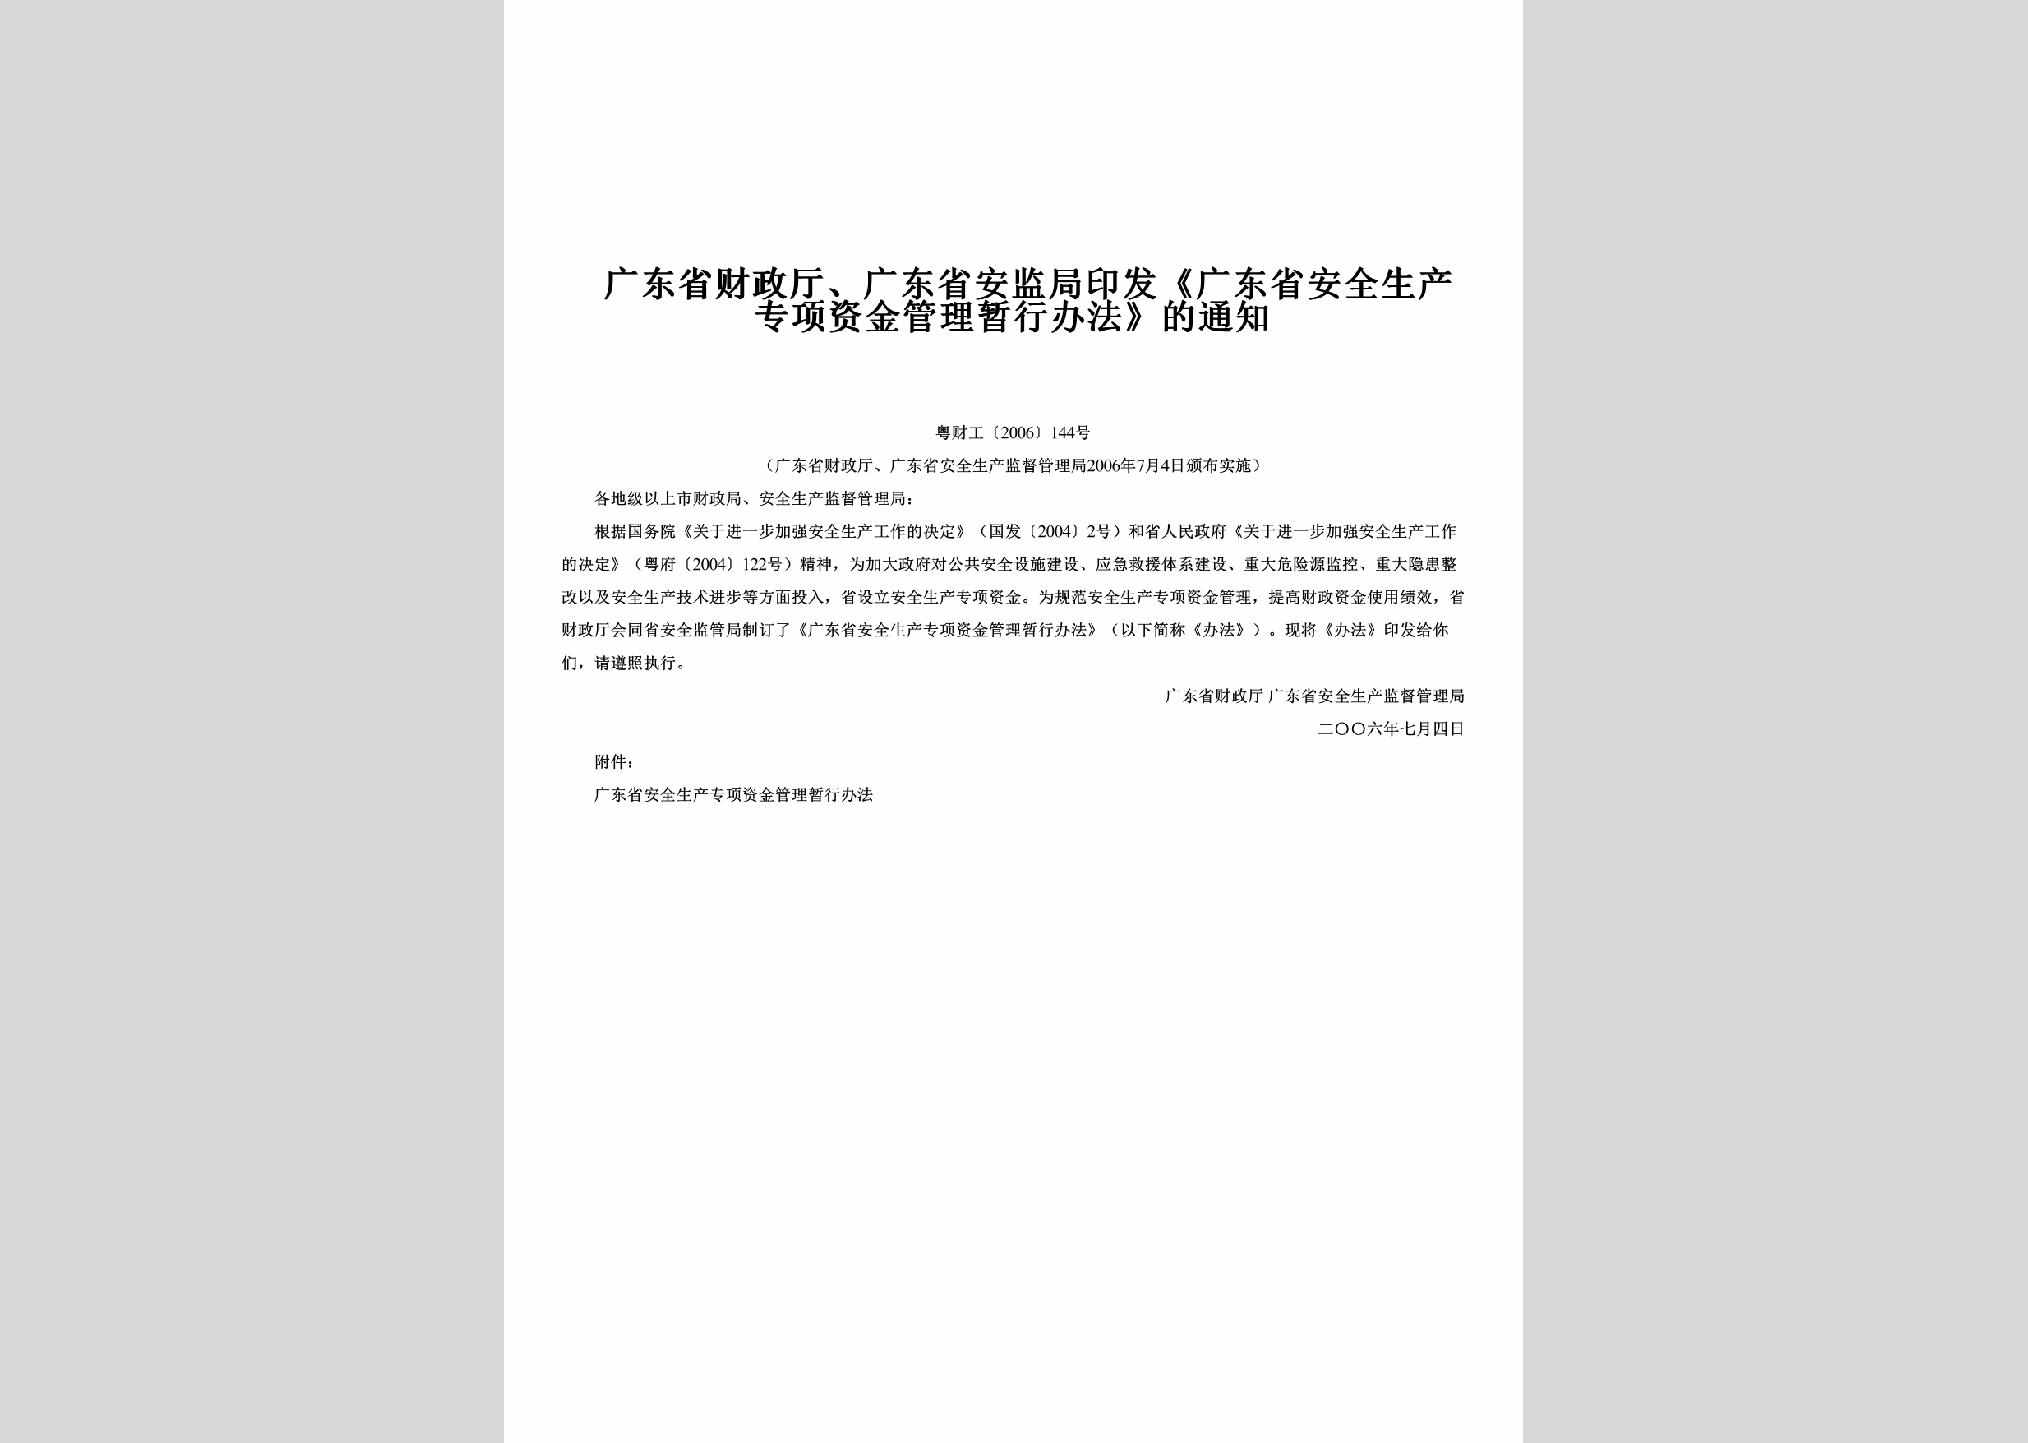 粤财工[2006]144号：印发《广东省安全生产专项资金管理暂行办法》的通知